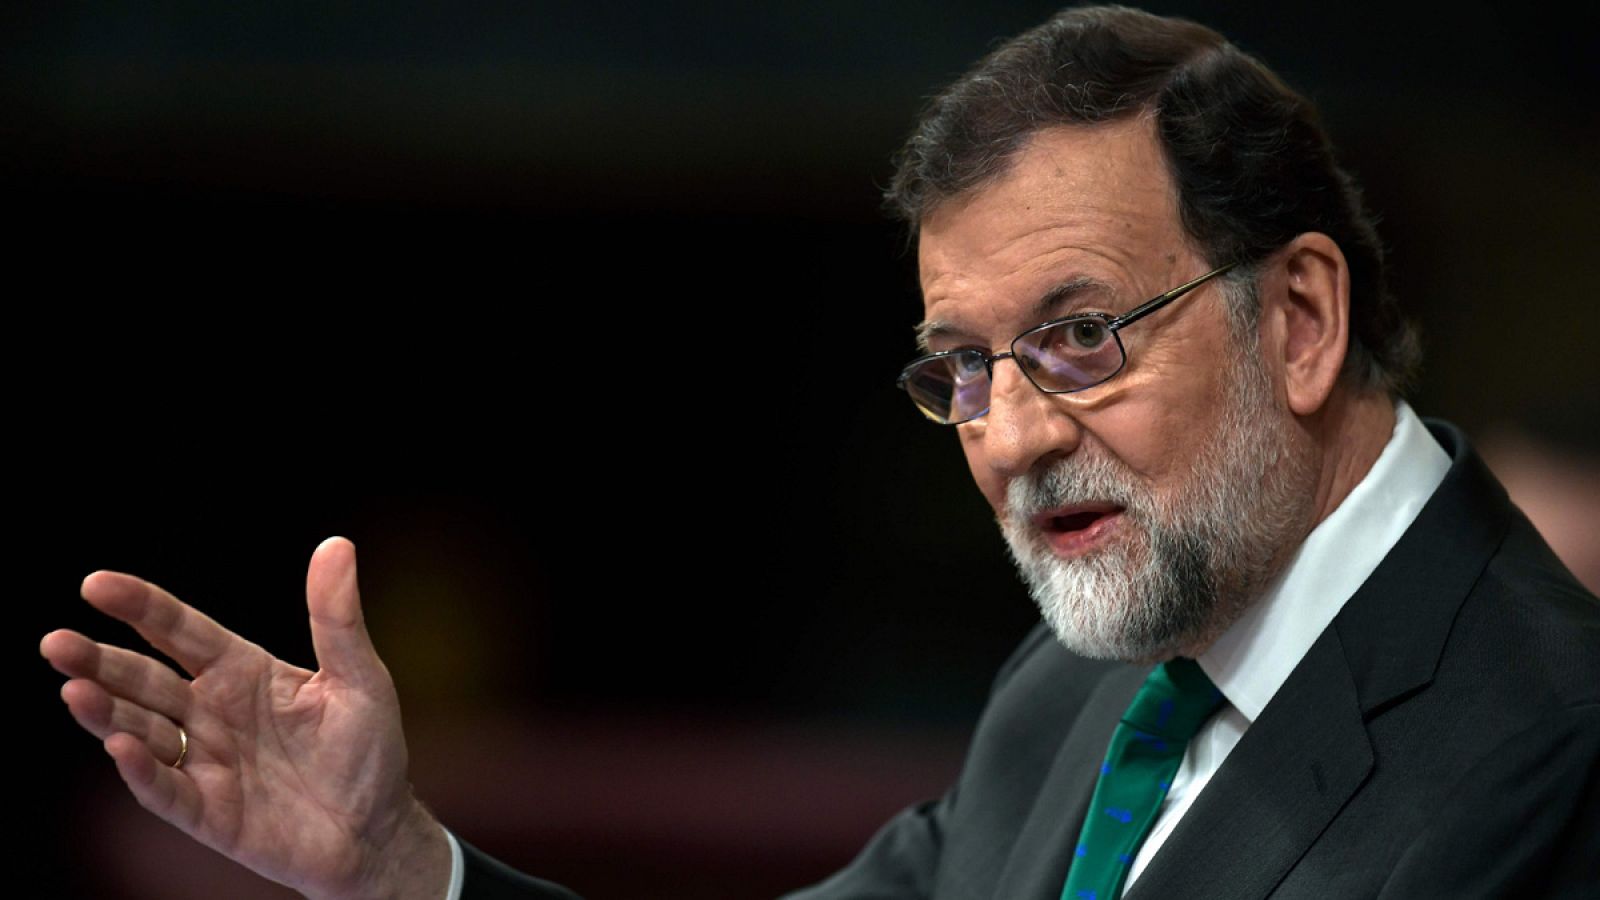 Moción de censura: Rajoy al PSOE ¿se pondrán a sí mismos una moción de censura?"